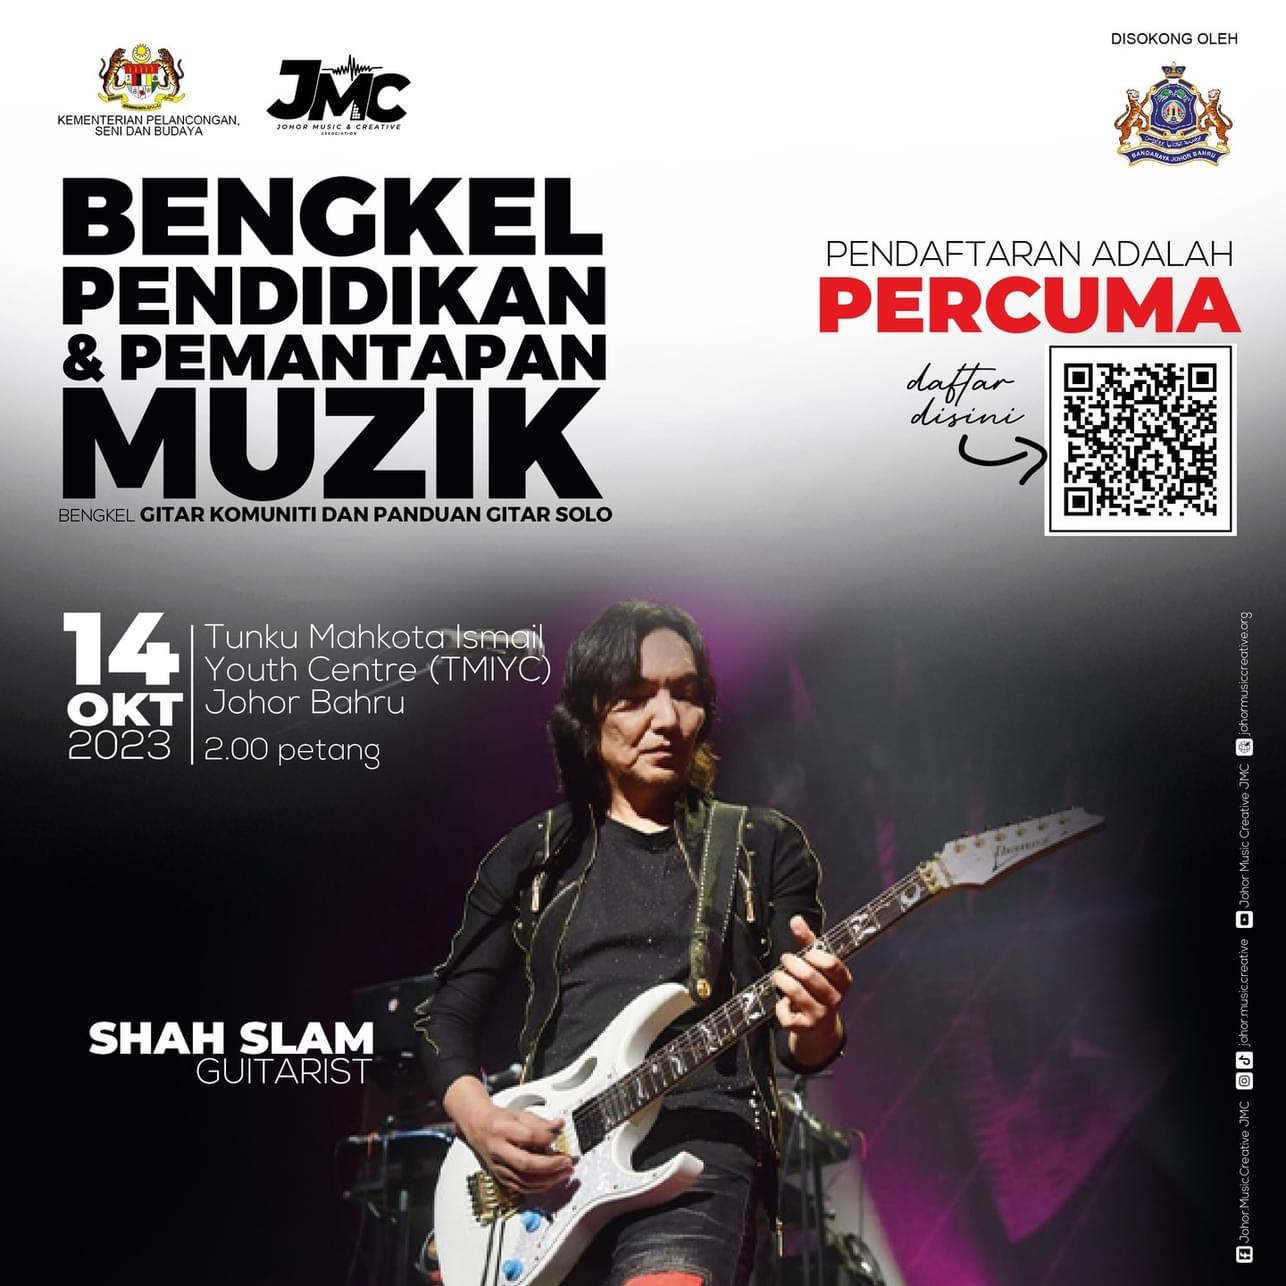 Bengkel Gitar Komuniti dan Panduan Gitar Solo bersama Shah Slam